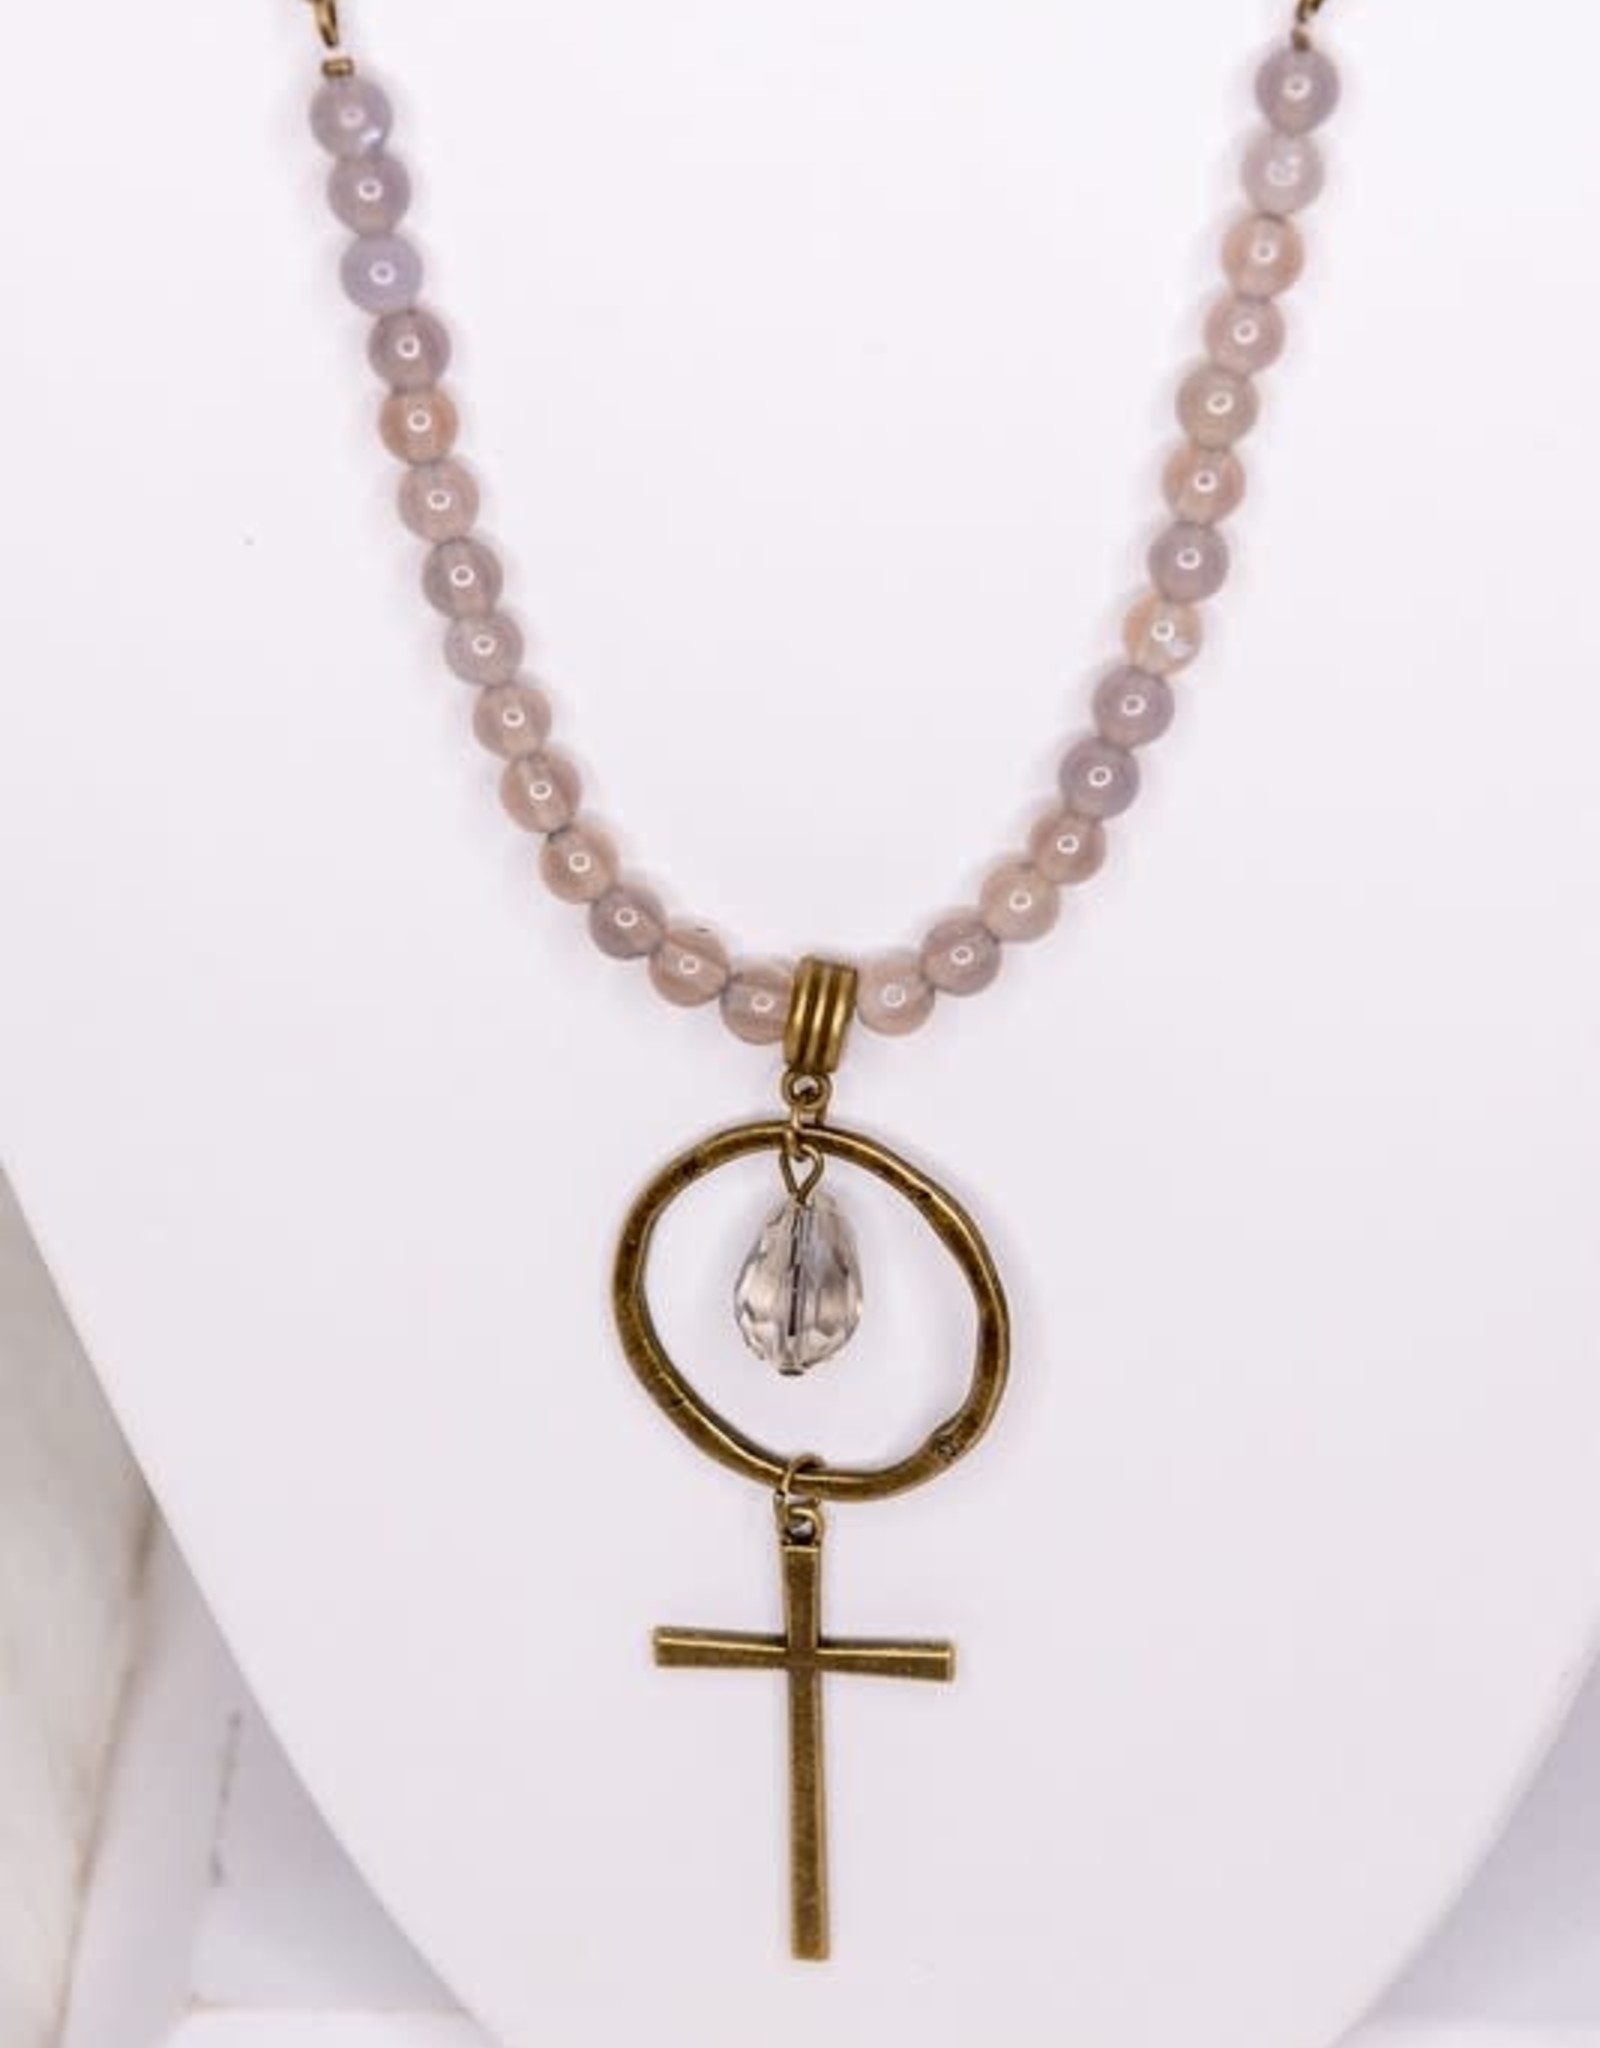 - Brass w/Cross Pendant Long Necklace